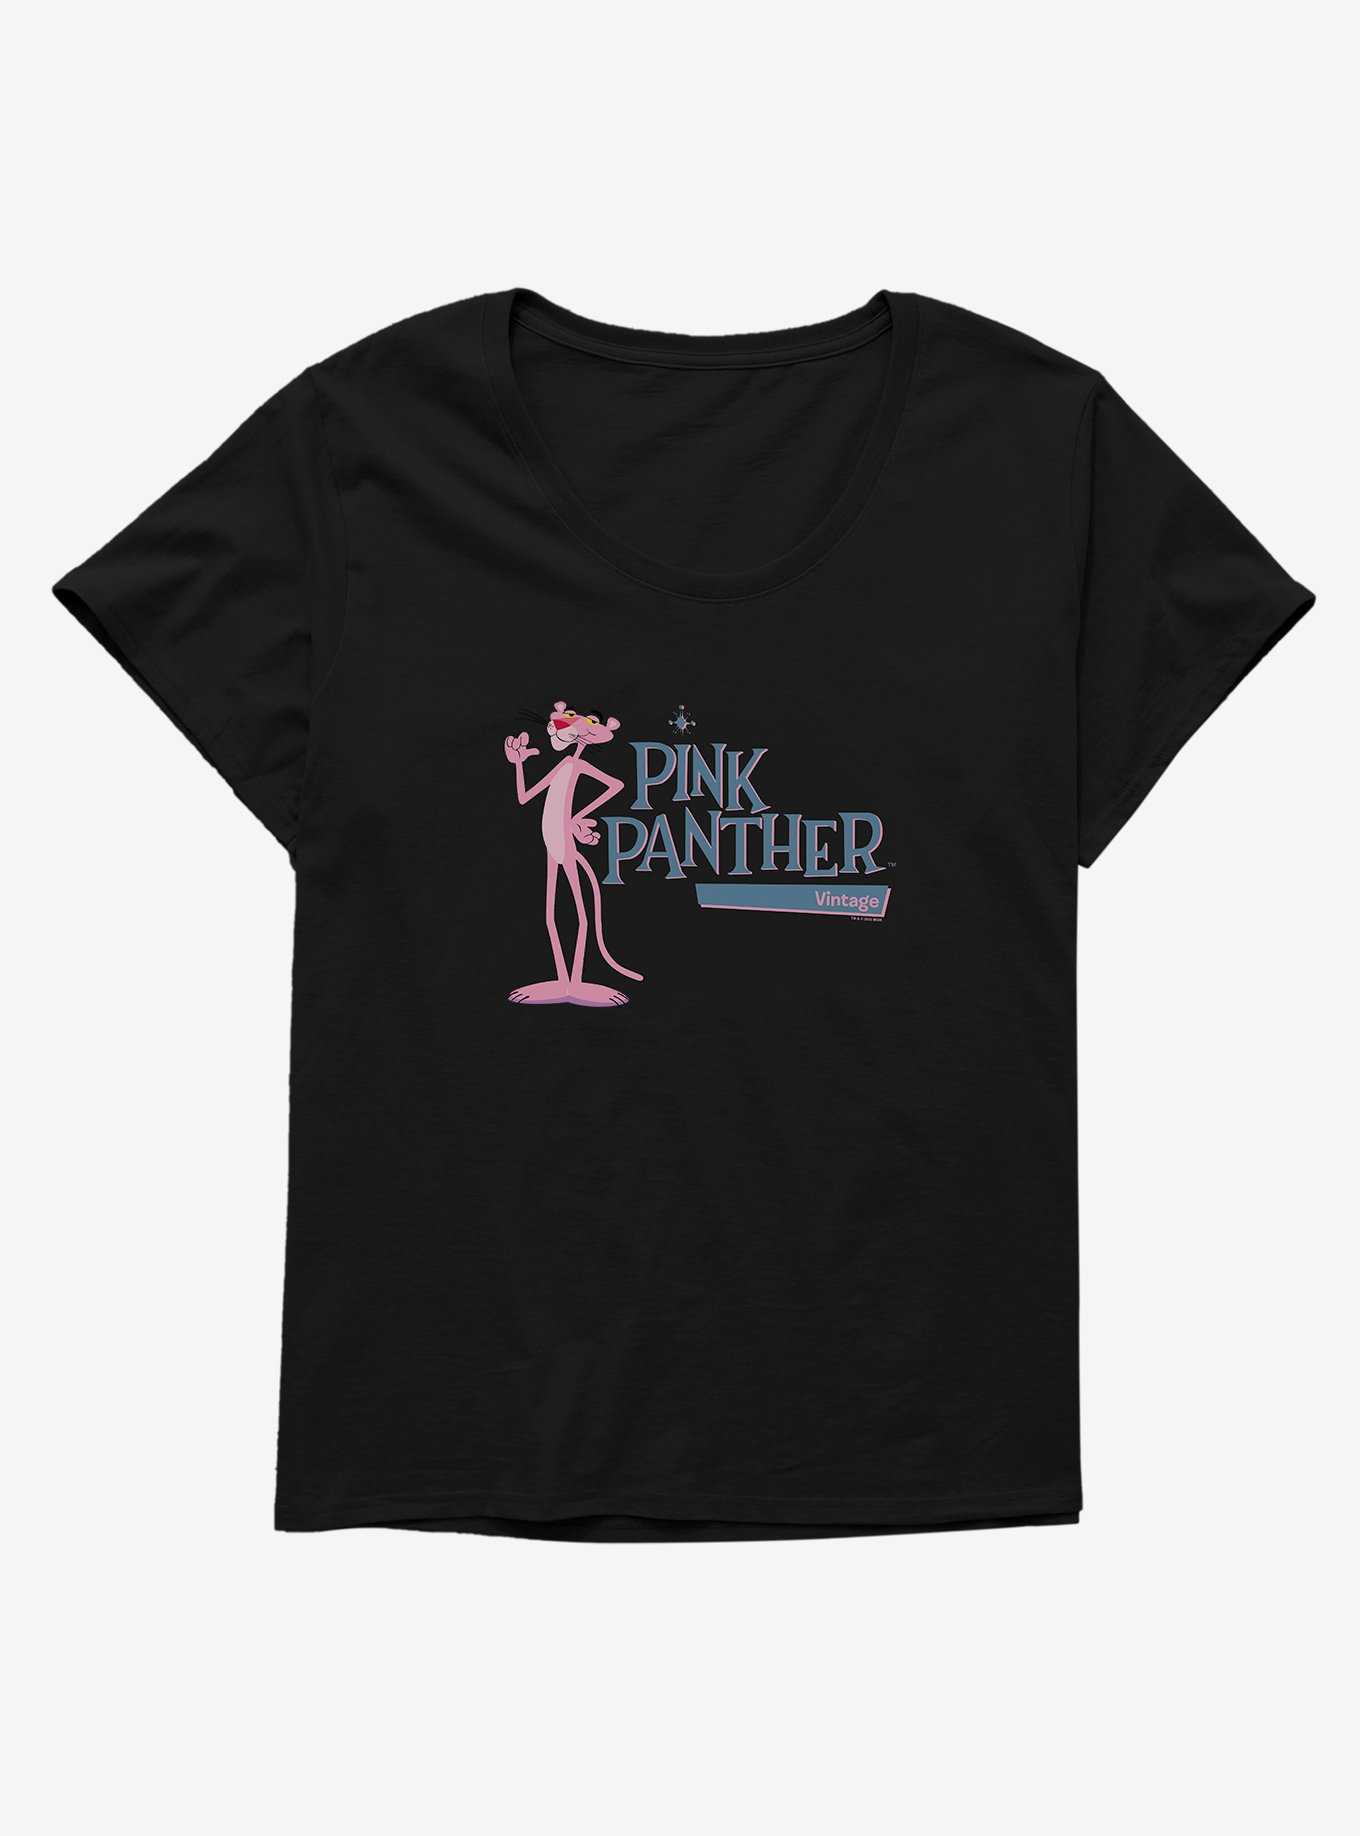 Pink Panther Vintage Girls T-Shirt Plus Size, , hi-res